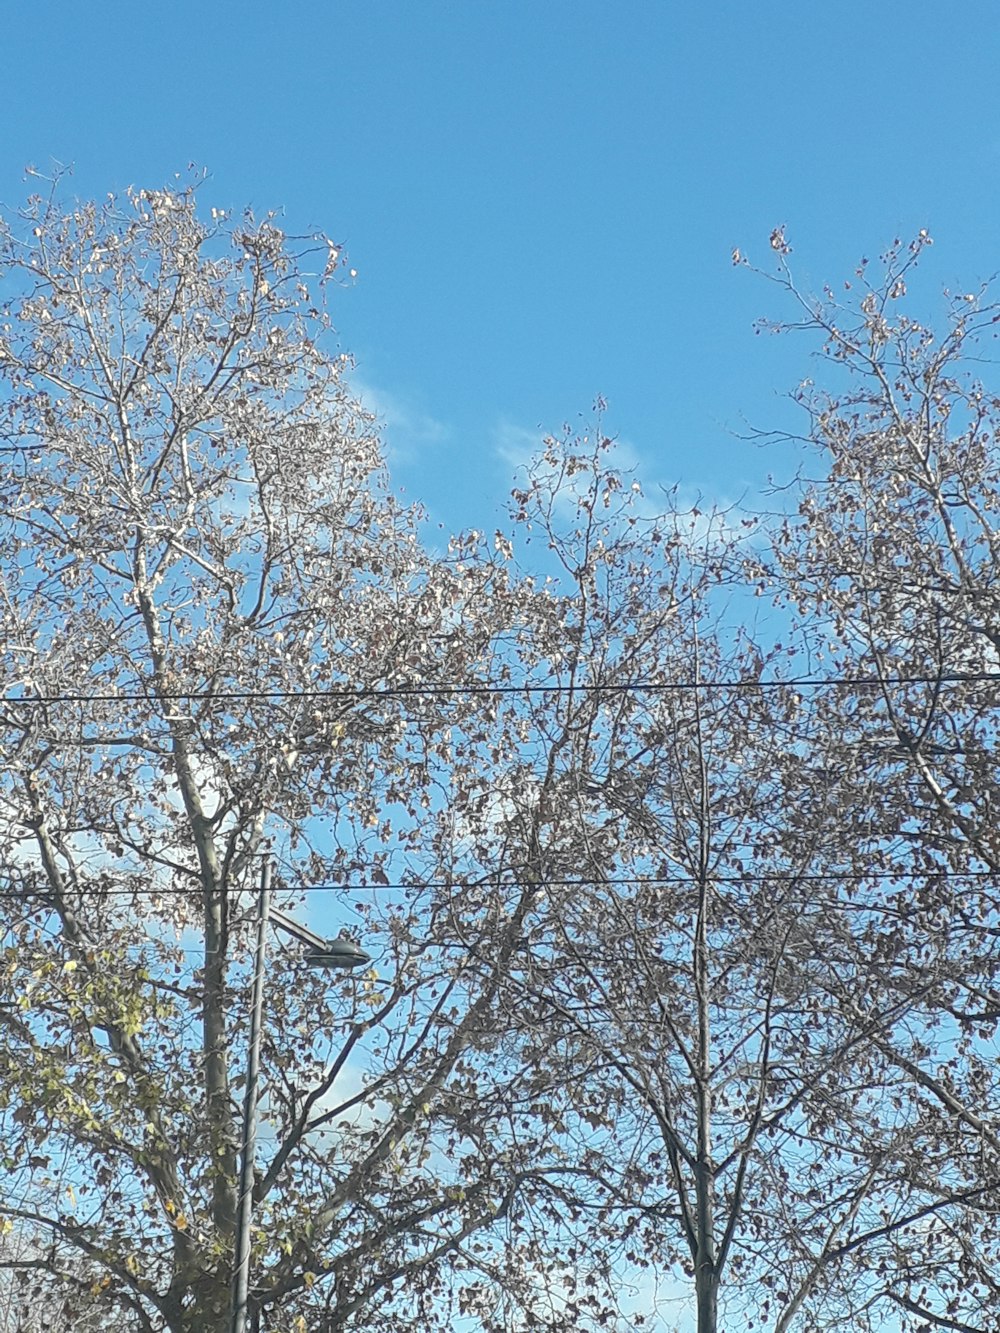 albero bianco e marrone sotto il cielo blu durante il giorno